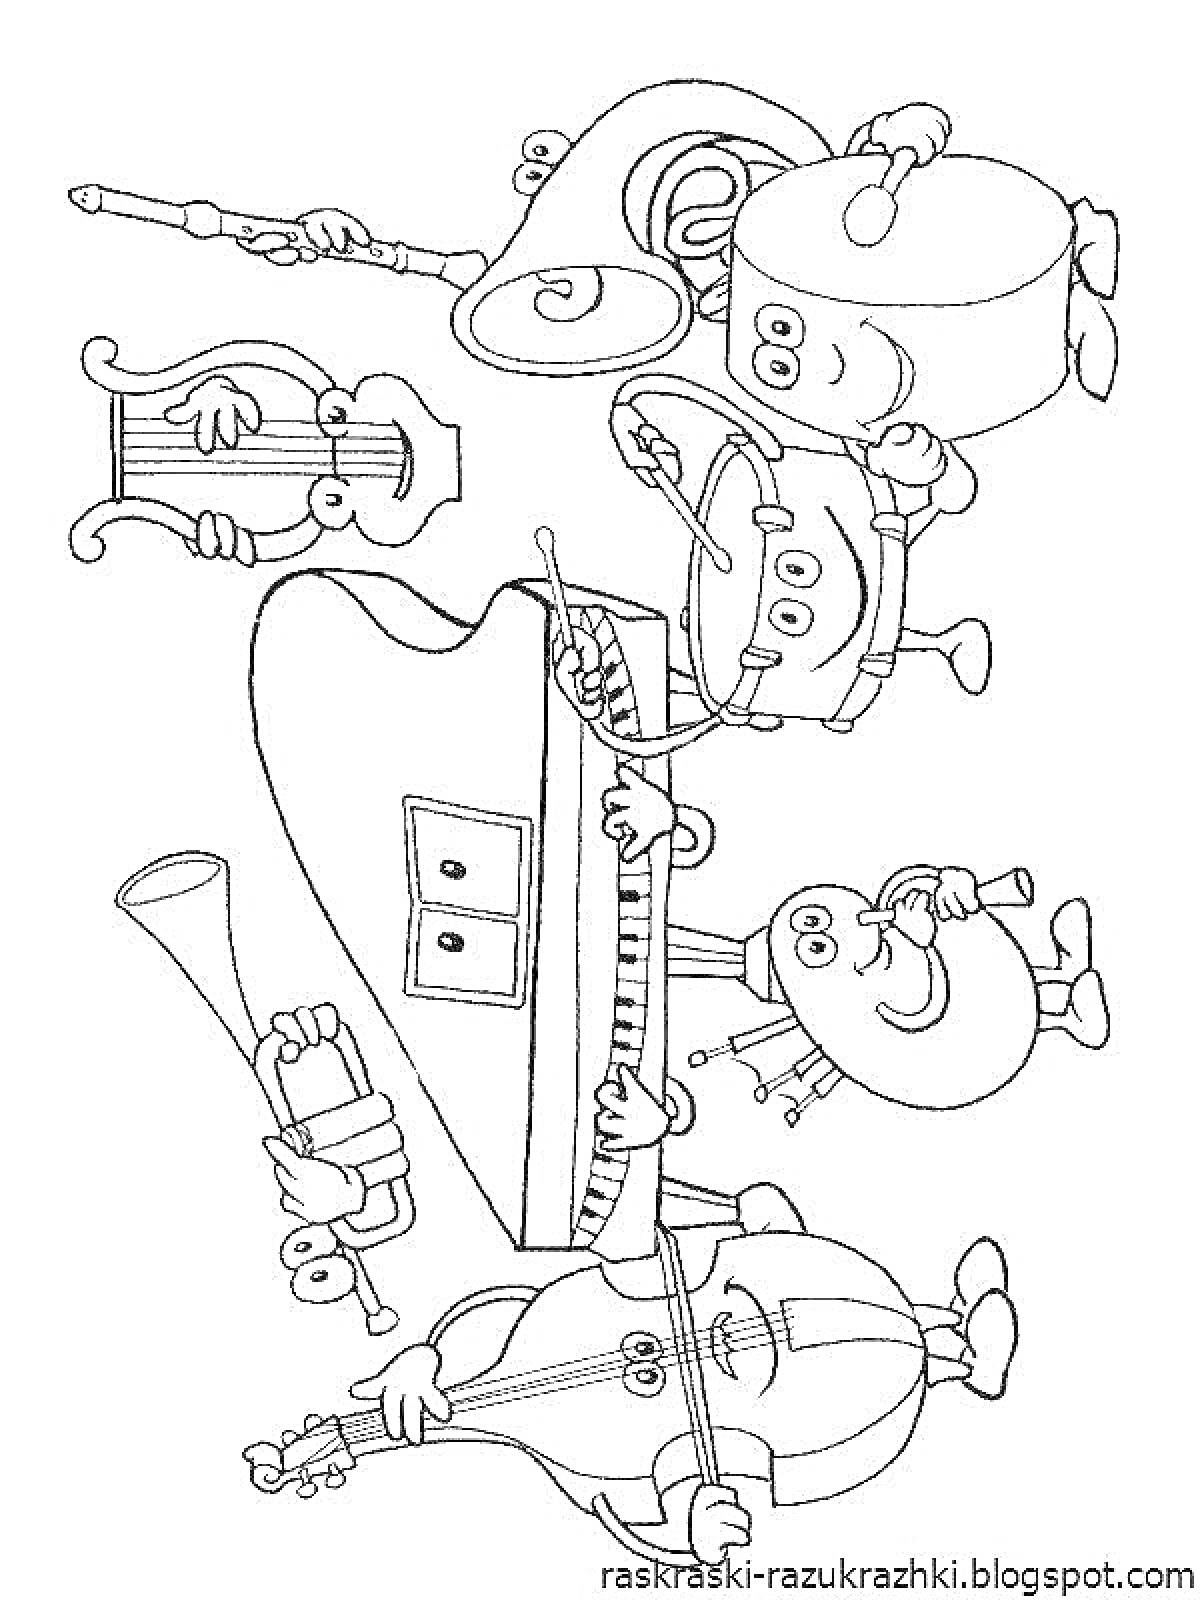 На раскраске изображено: Музыкальные инструменты, Рояль, Барабан, Скрипка, Труба, Контрабас, Развлечения, Для детей